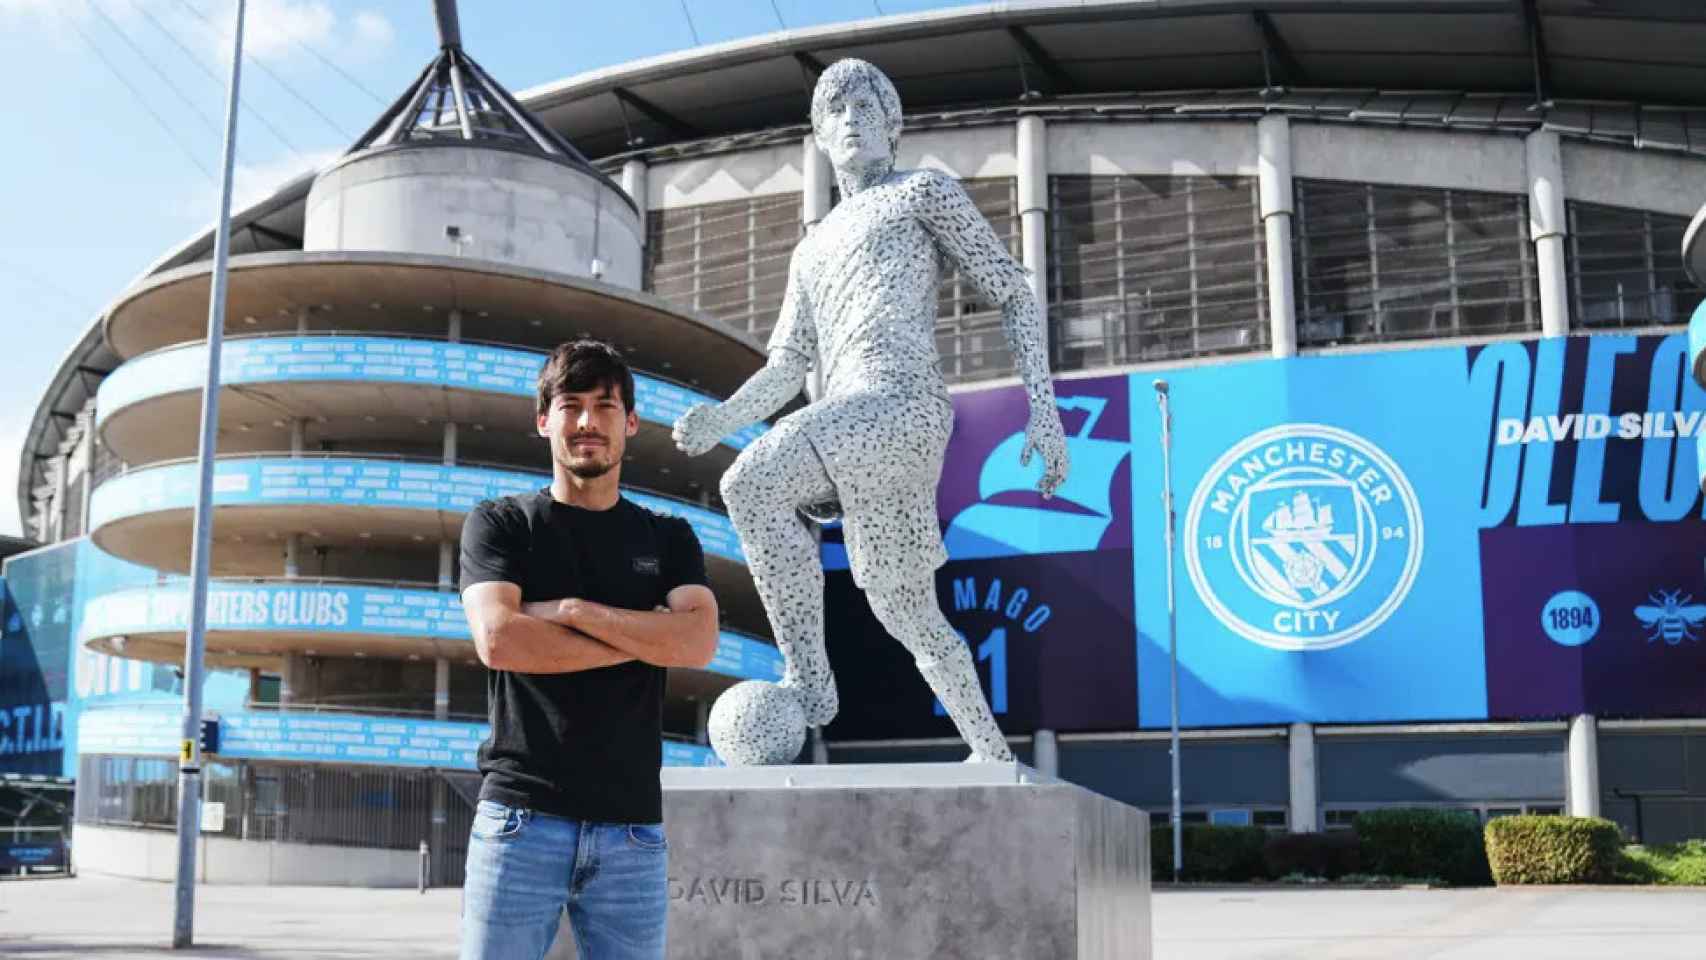 David Silva, junto a su estatua en el Etihad Stadium